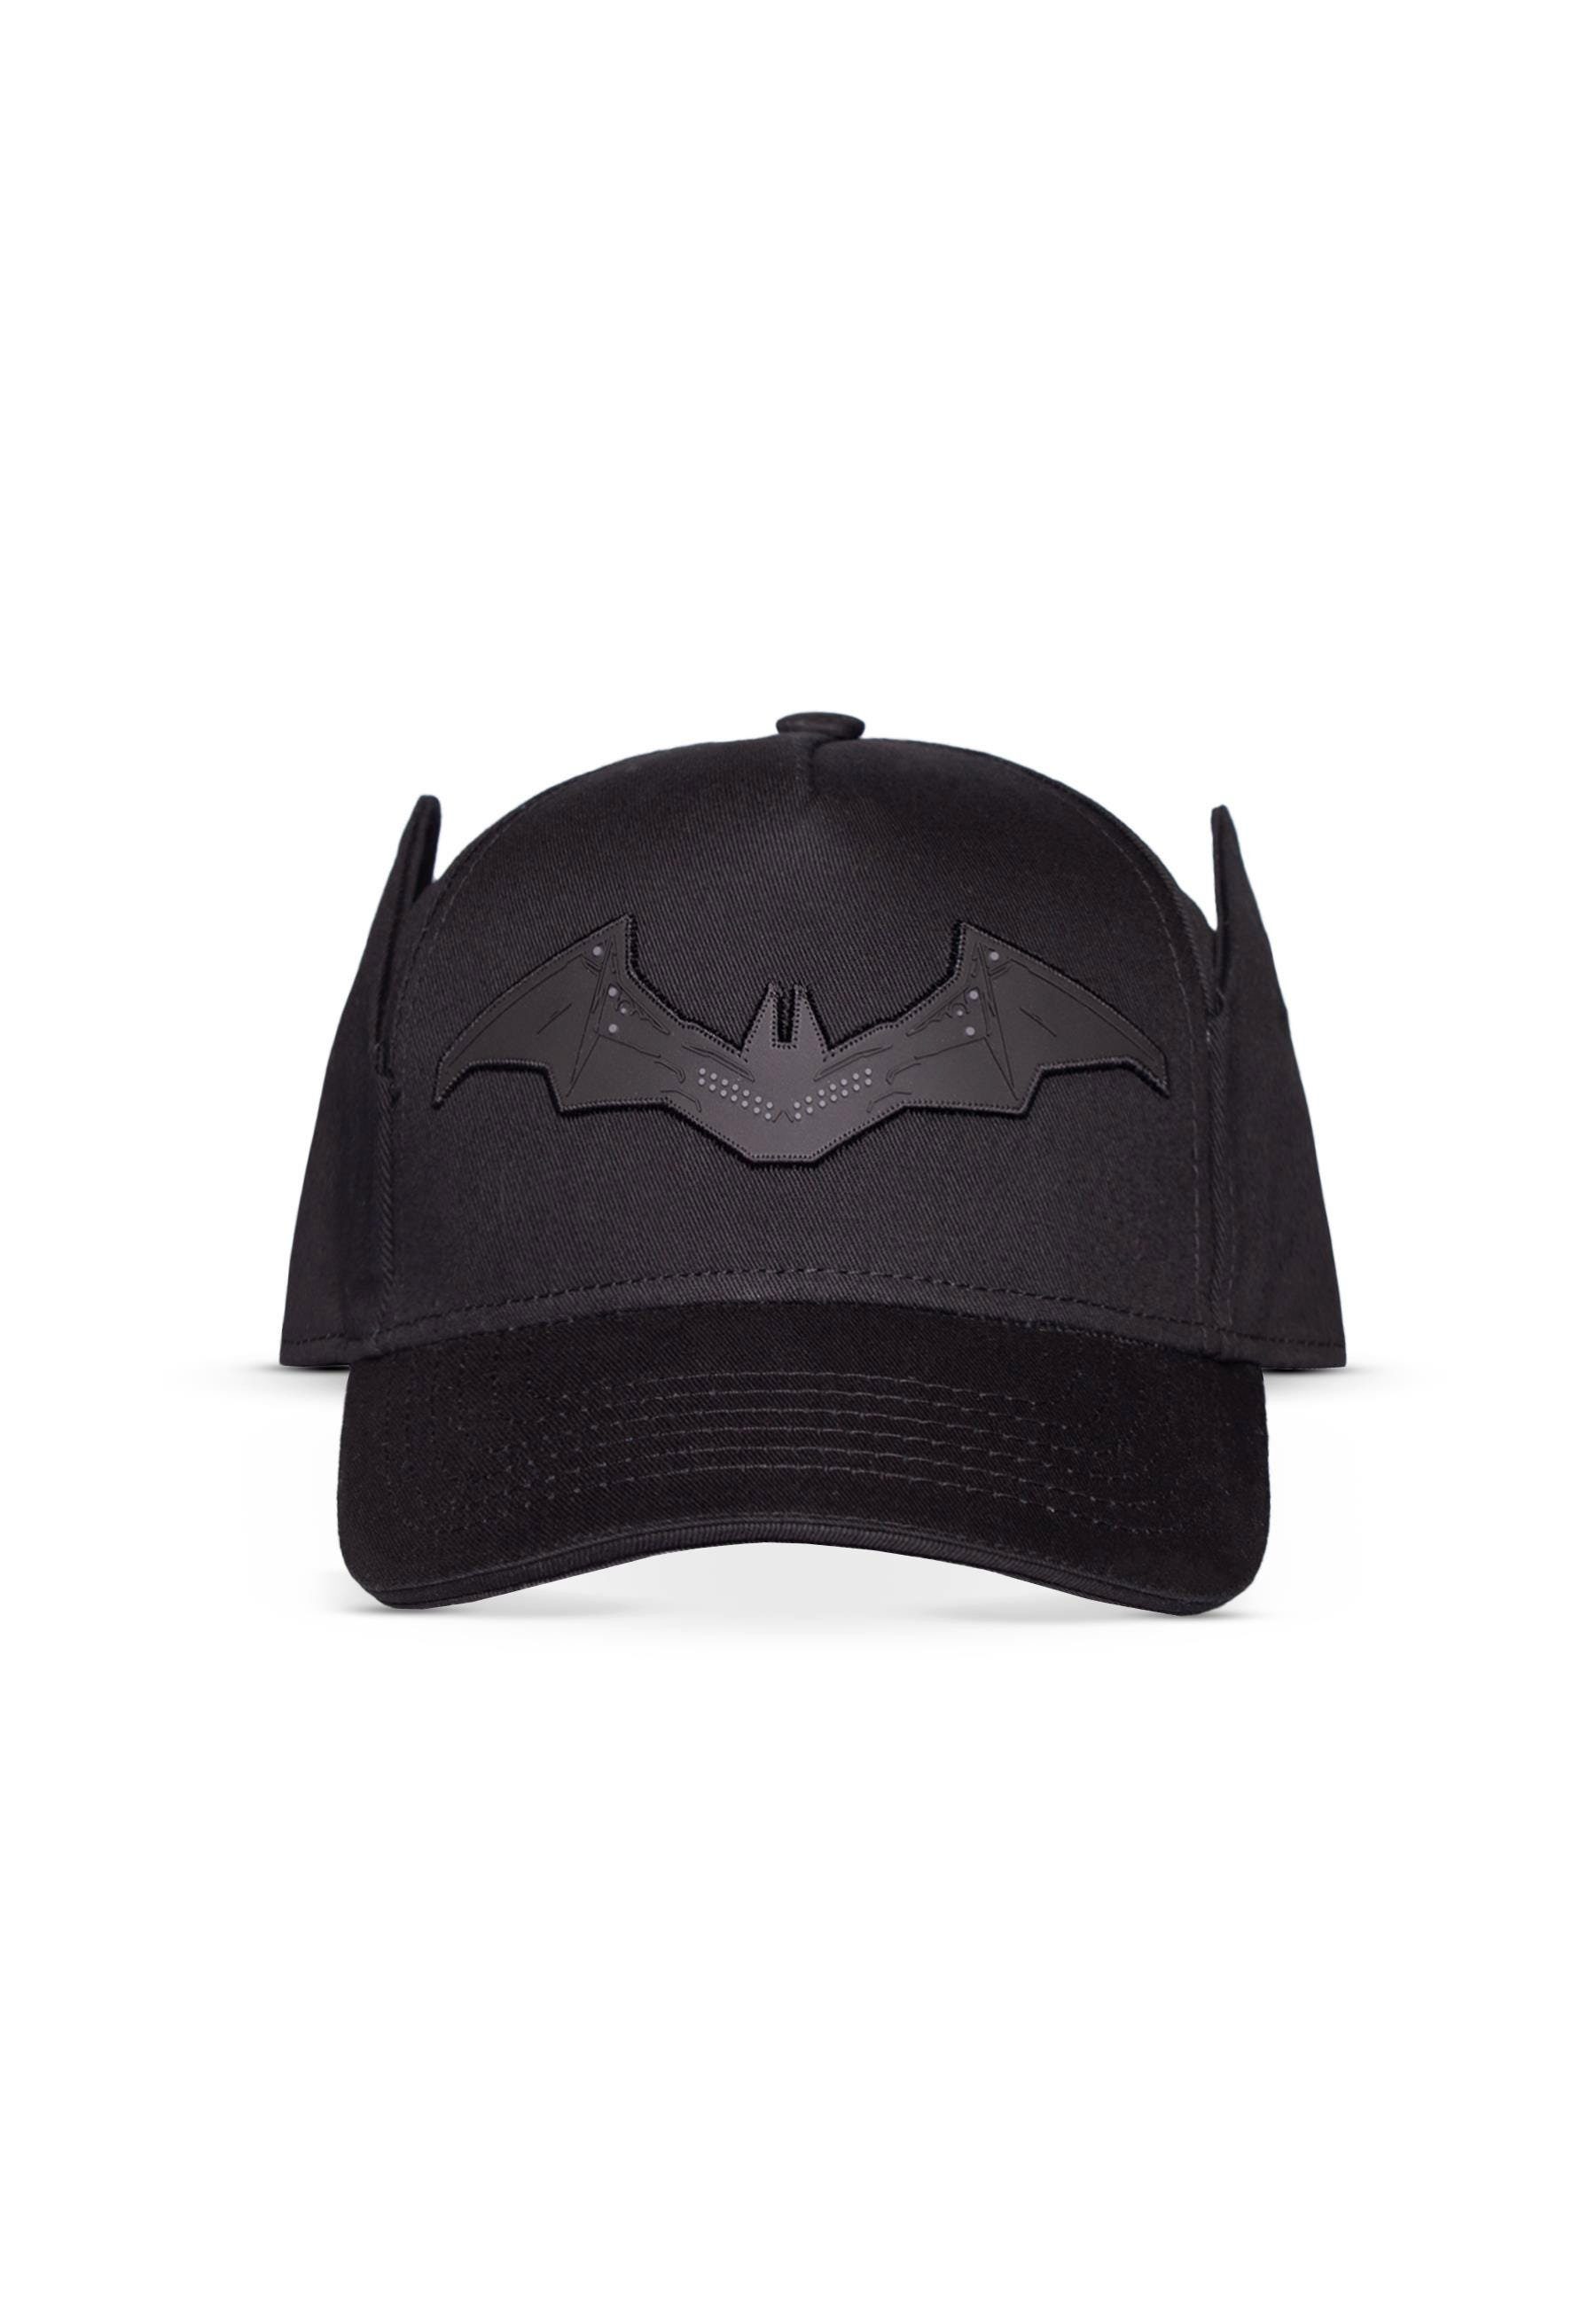 Batman Snapback Cap